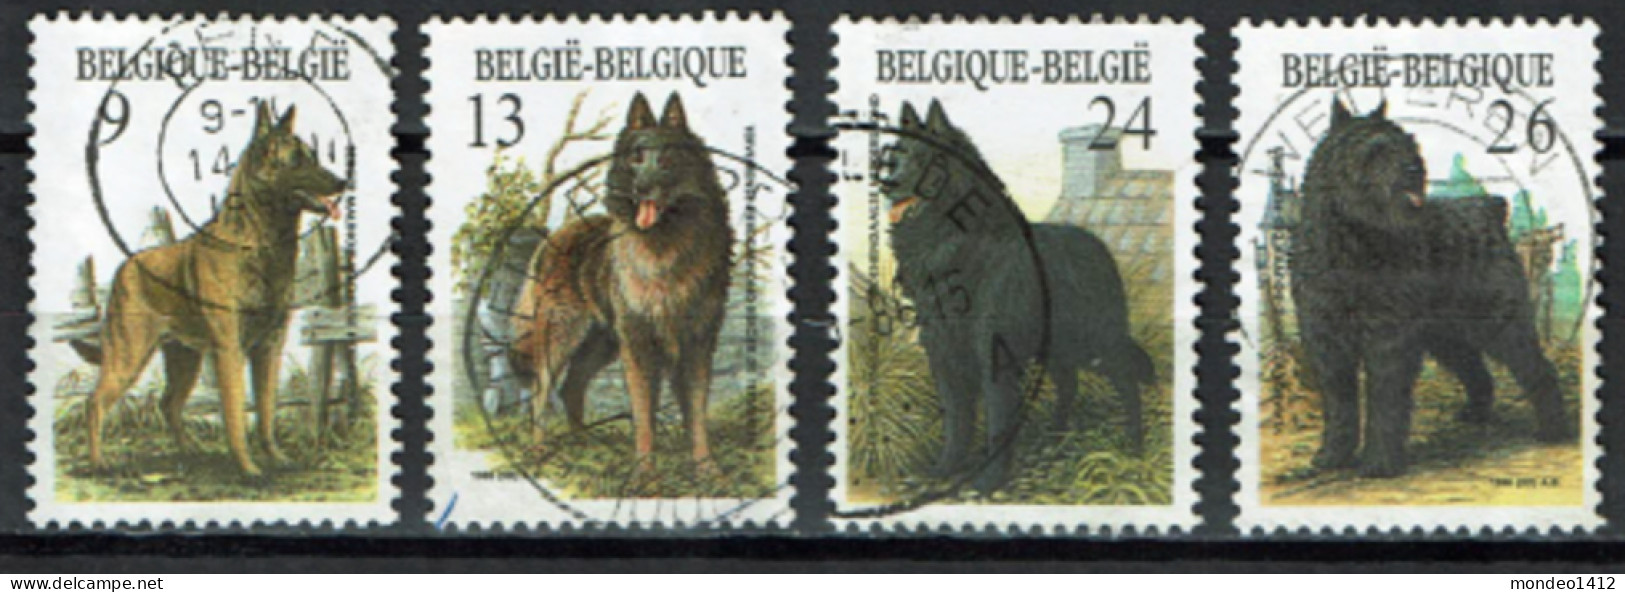 België 1986 OBP 2213/2216 - Y&T 2213/16 - Honden, Dogs, Chiens - Herdershond - Berger, Bouvier - Usados